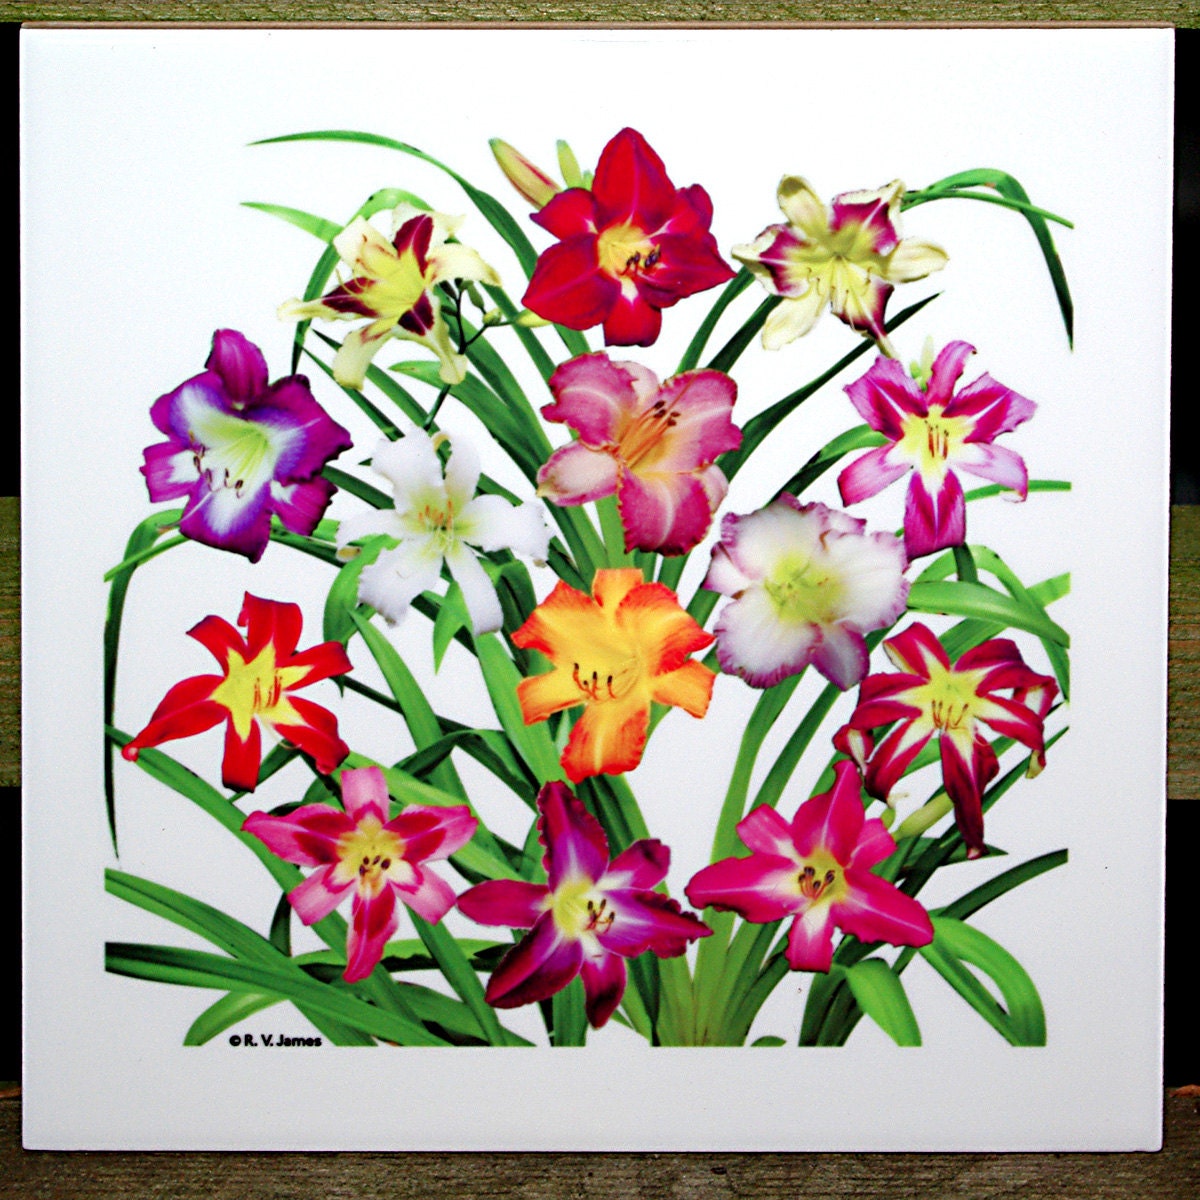 Daylilies 6-inch ceramic tile, floral trivet, flower, flowers, red, purple, gold, violet, decorater tile - RVJamesDesigns